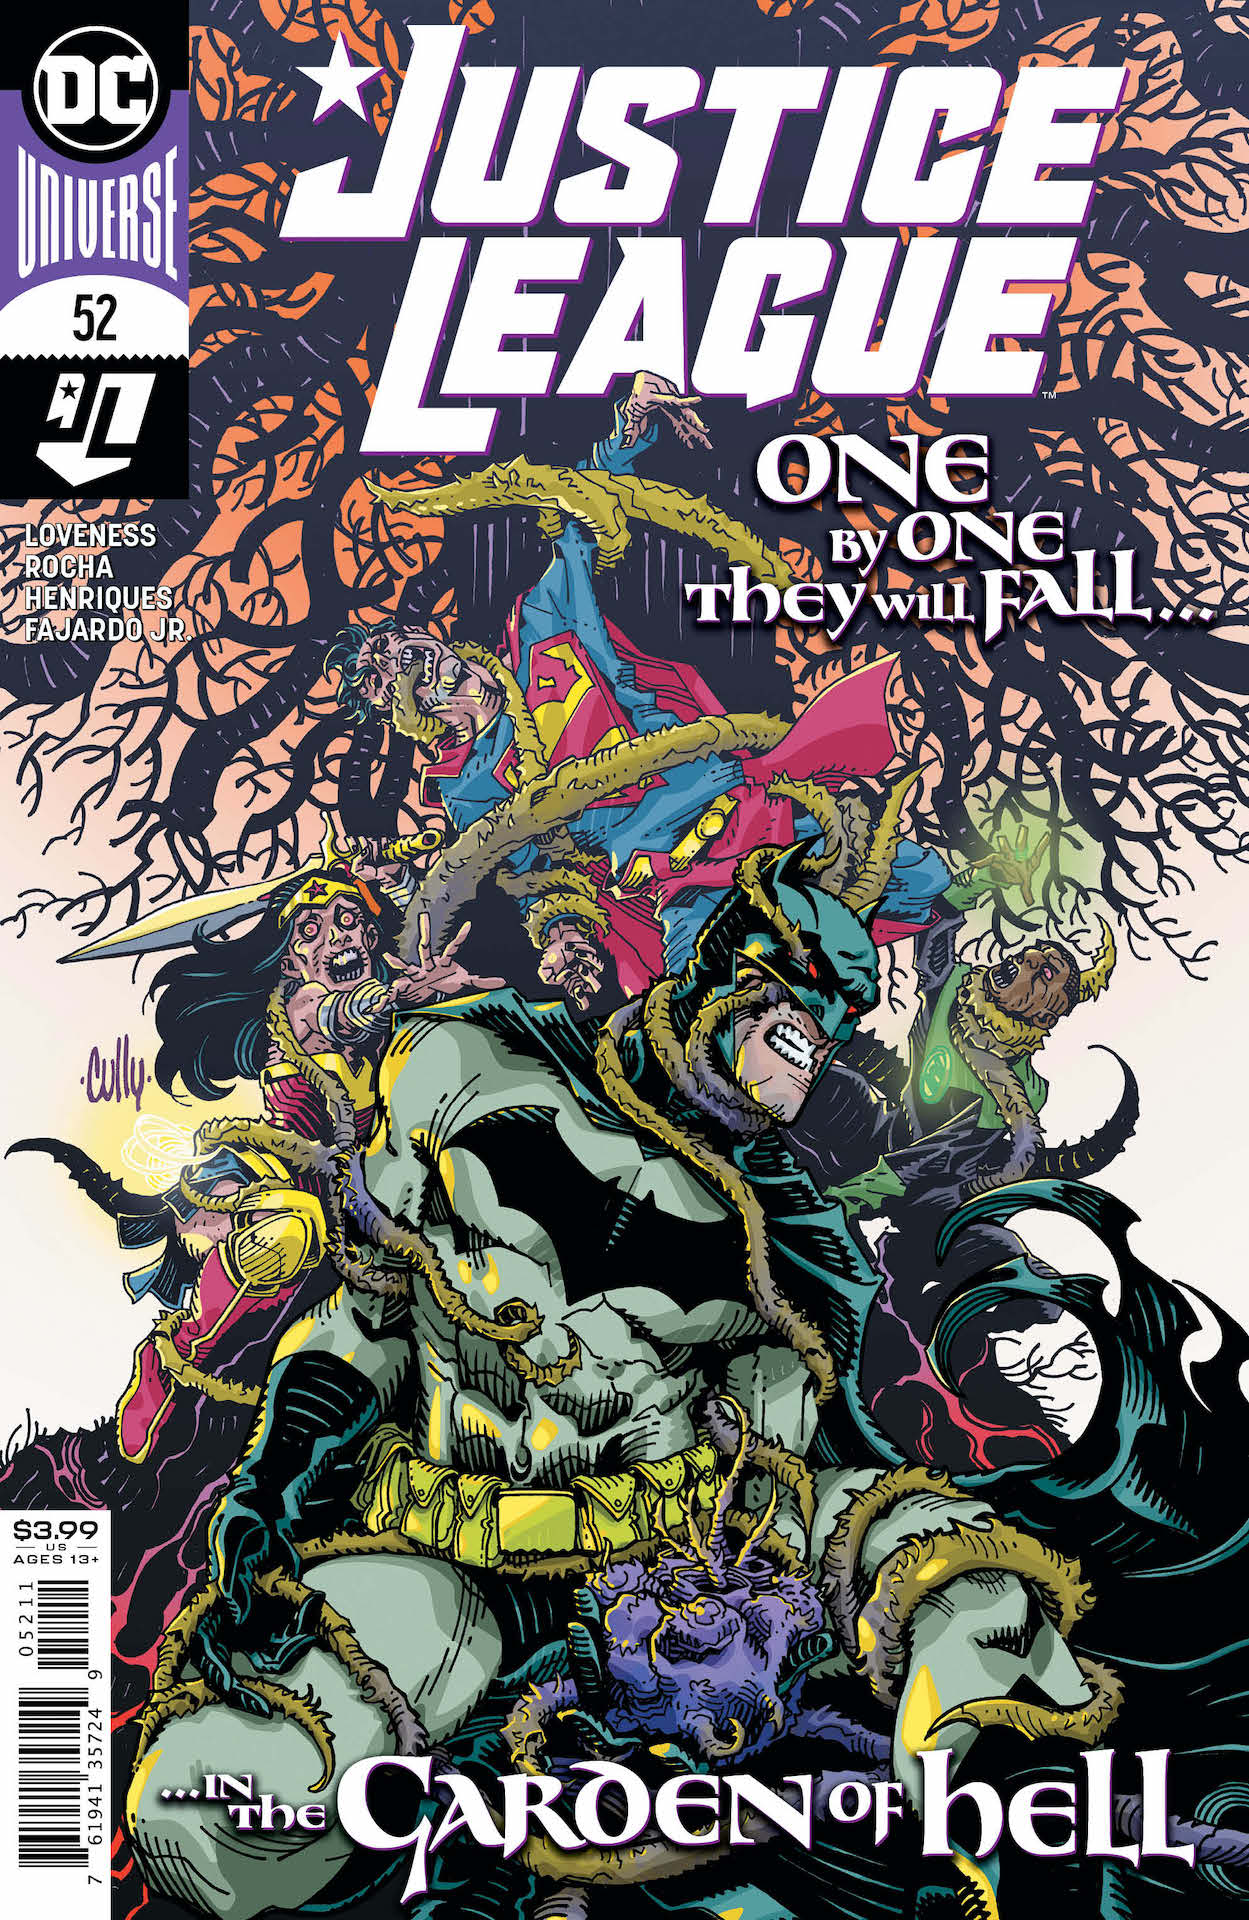 DC Preview: Justice League #52